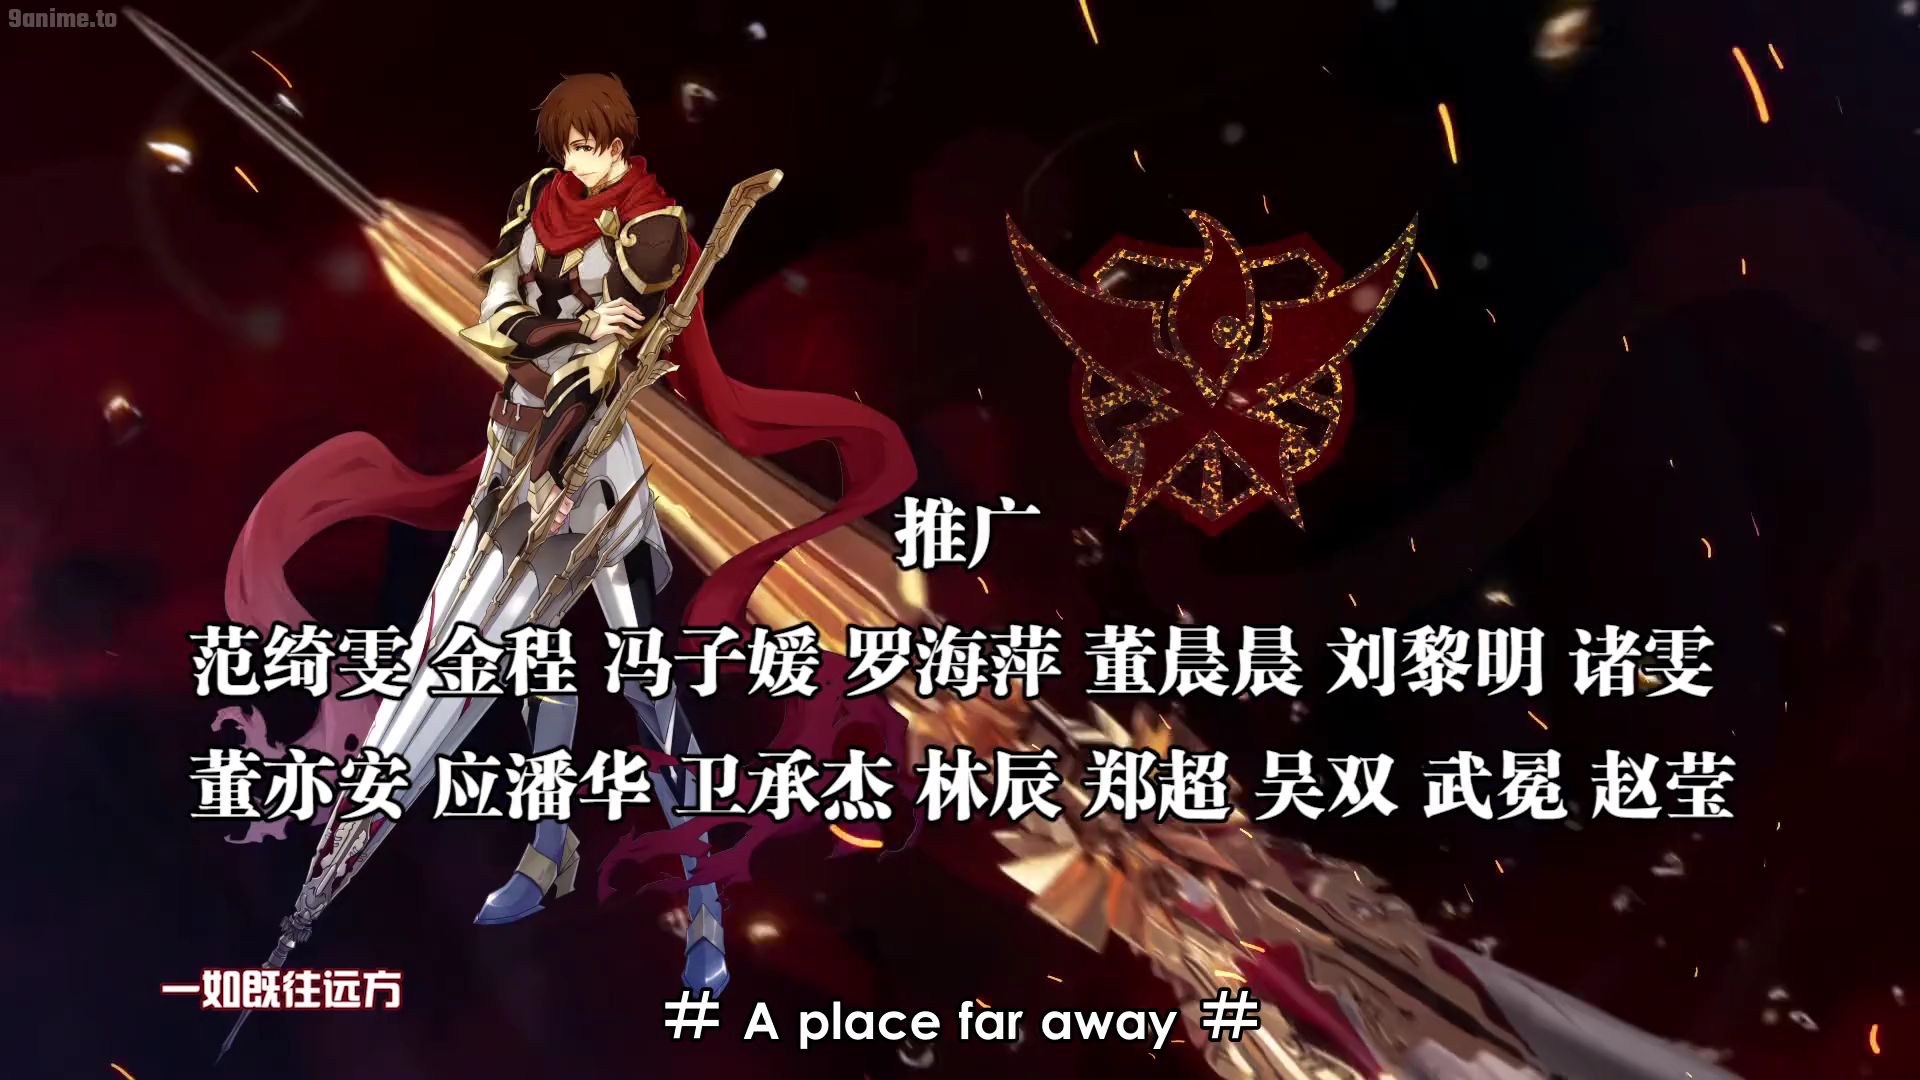 Quan Zhi Gao Shou Free Desktop Wallpaper  Free desktop wallpaper, Anime  wallpaper, King's avatar